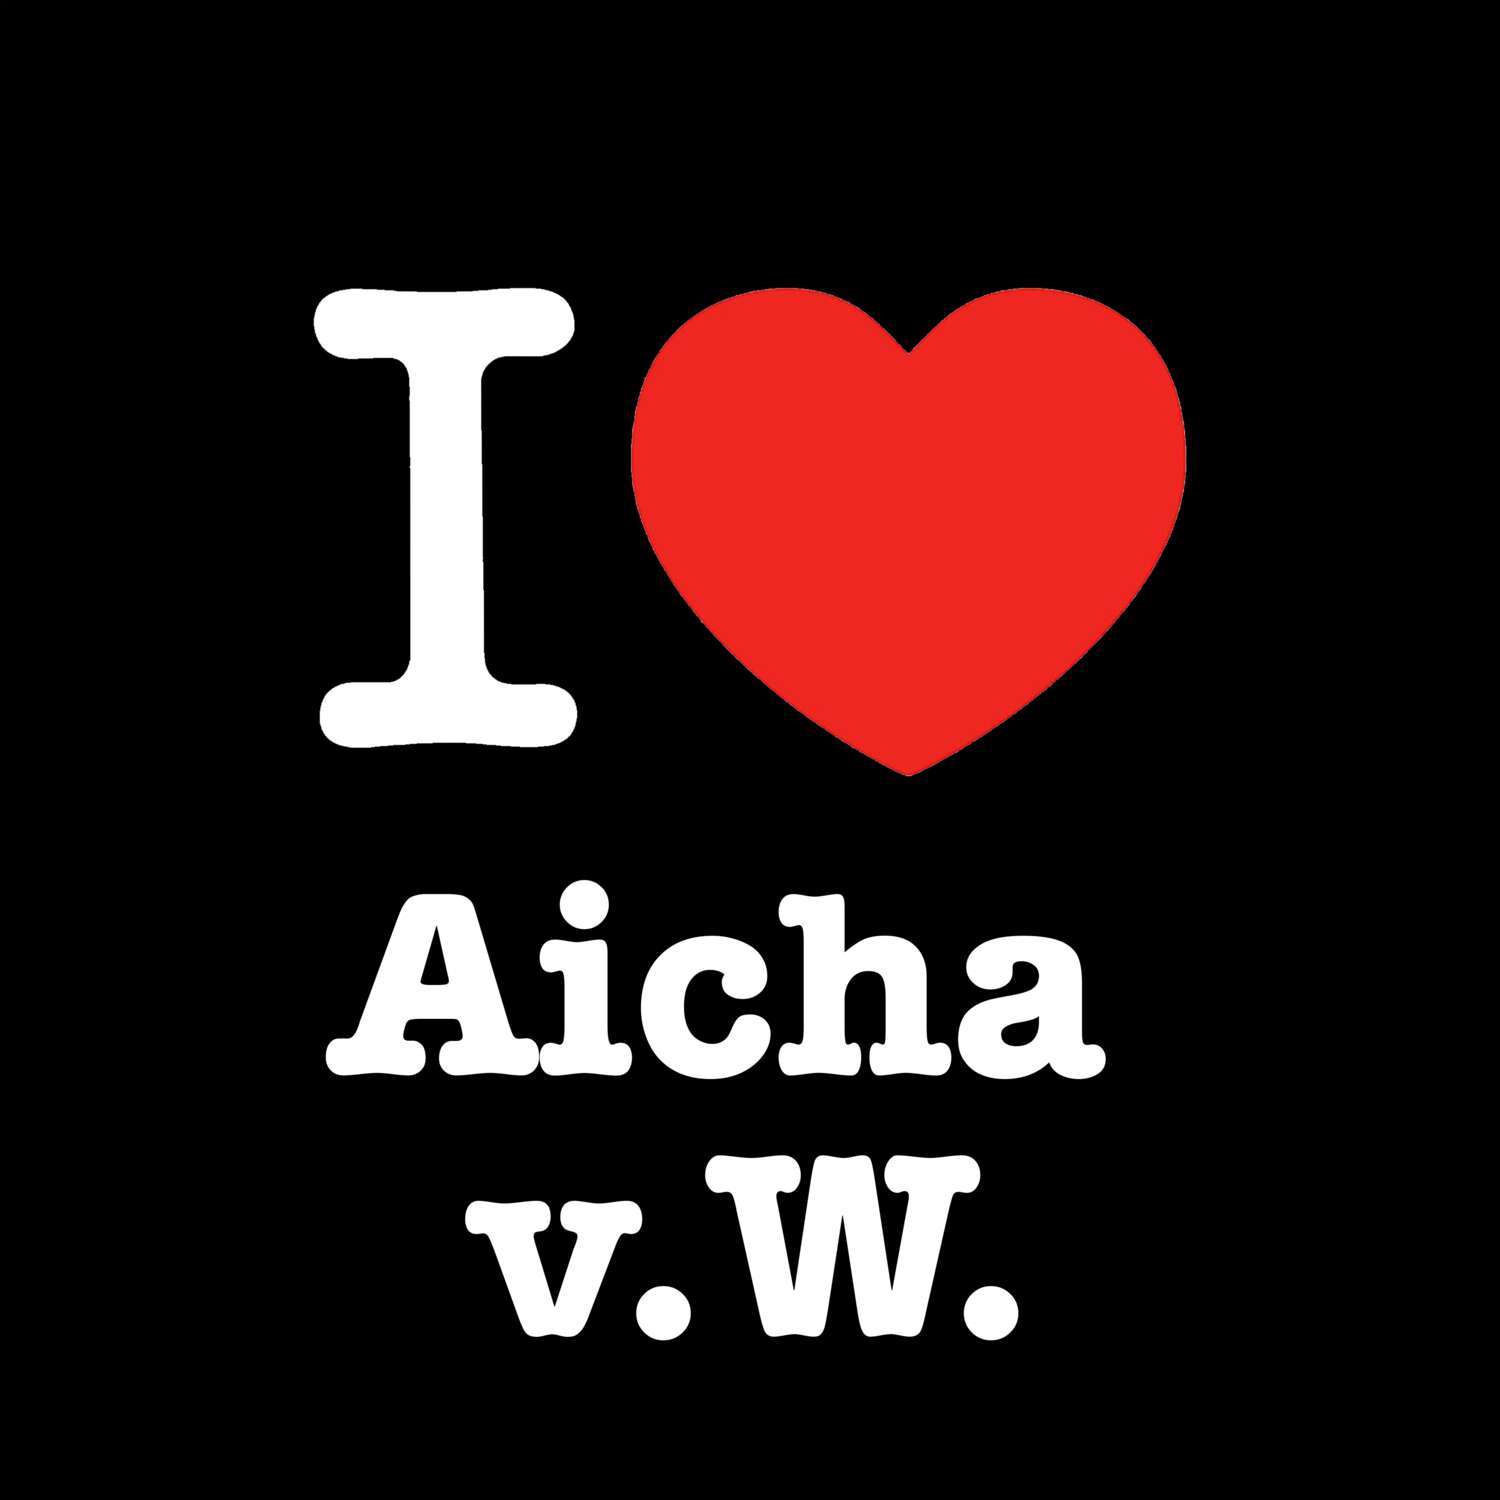 Aicha v.W. T-Shirt »I love«